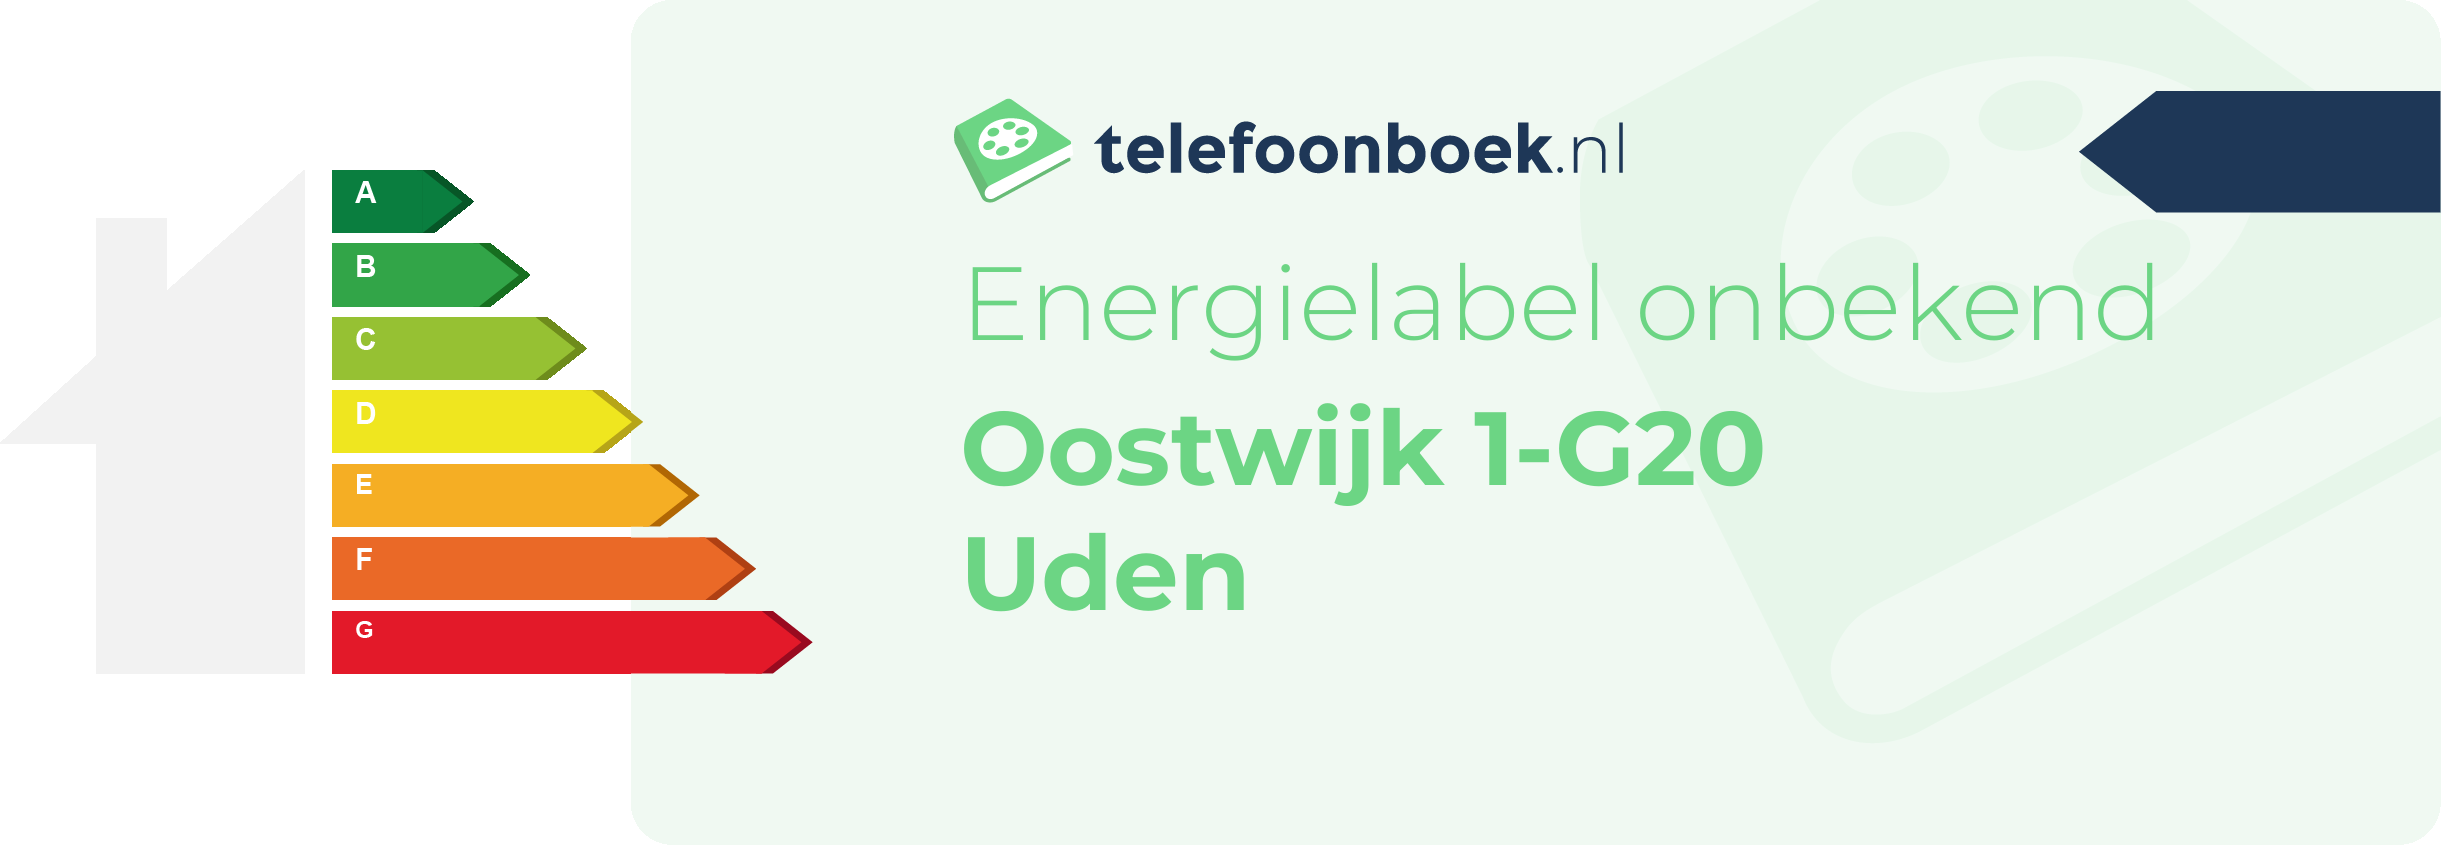 Energielabel Oostwijk 1-G20 Uden